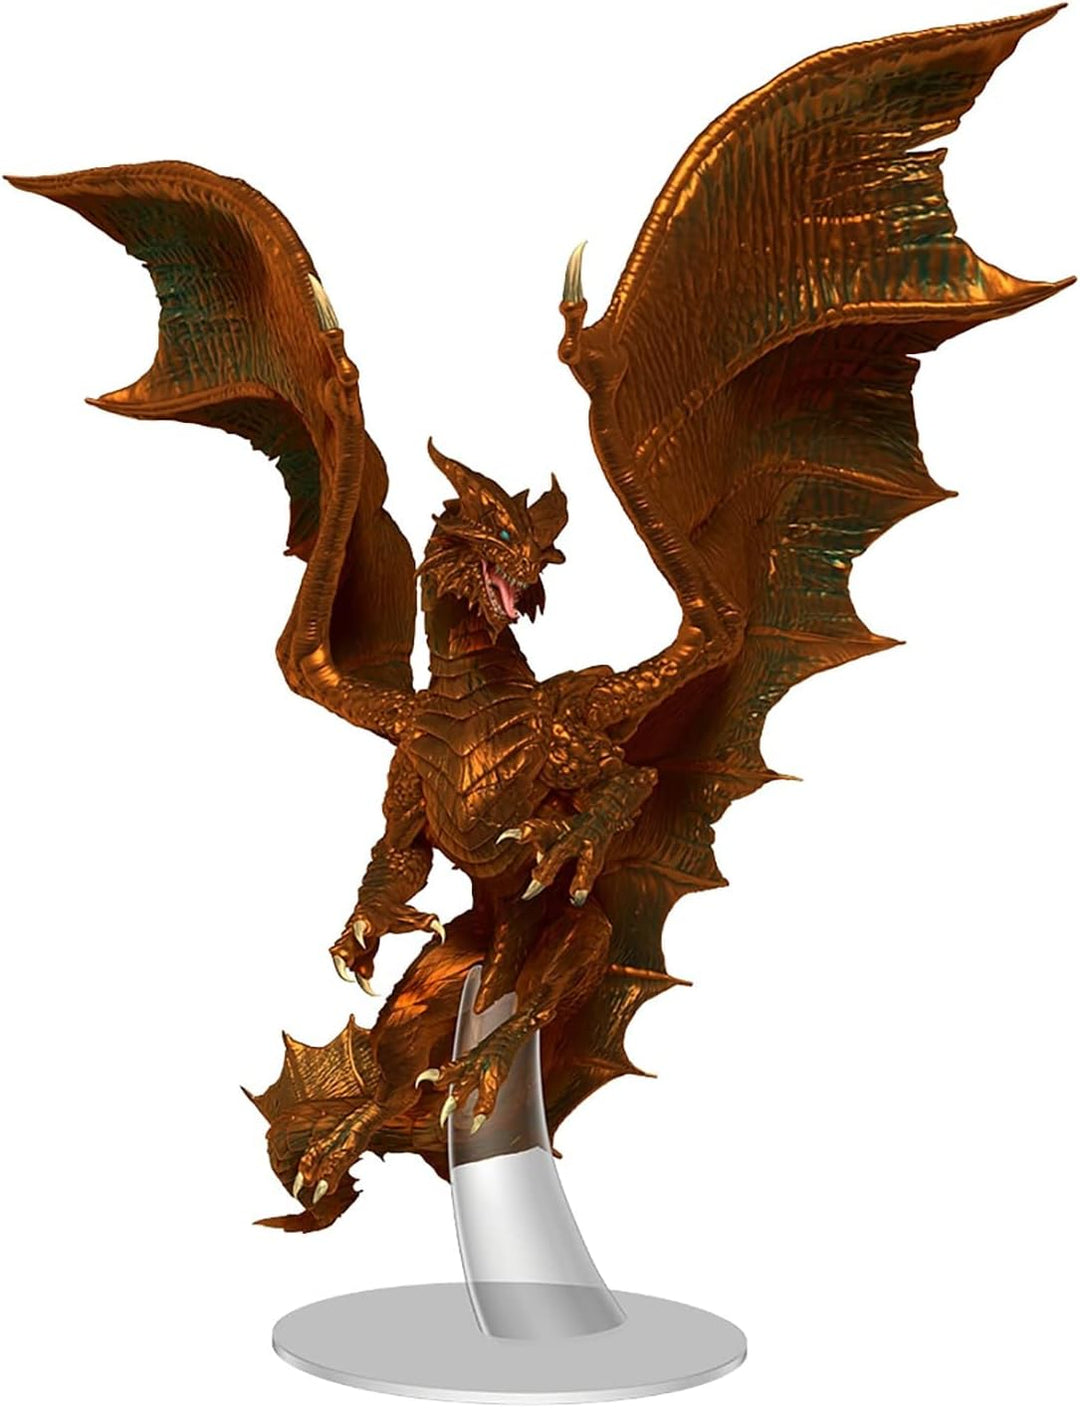 Dungeons & Dragons D&D Nolzur's Marvelous Miniatures: Adult Copper Dragon